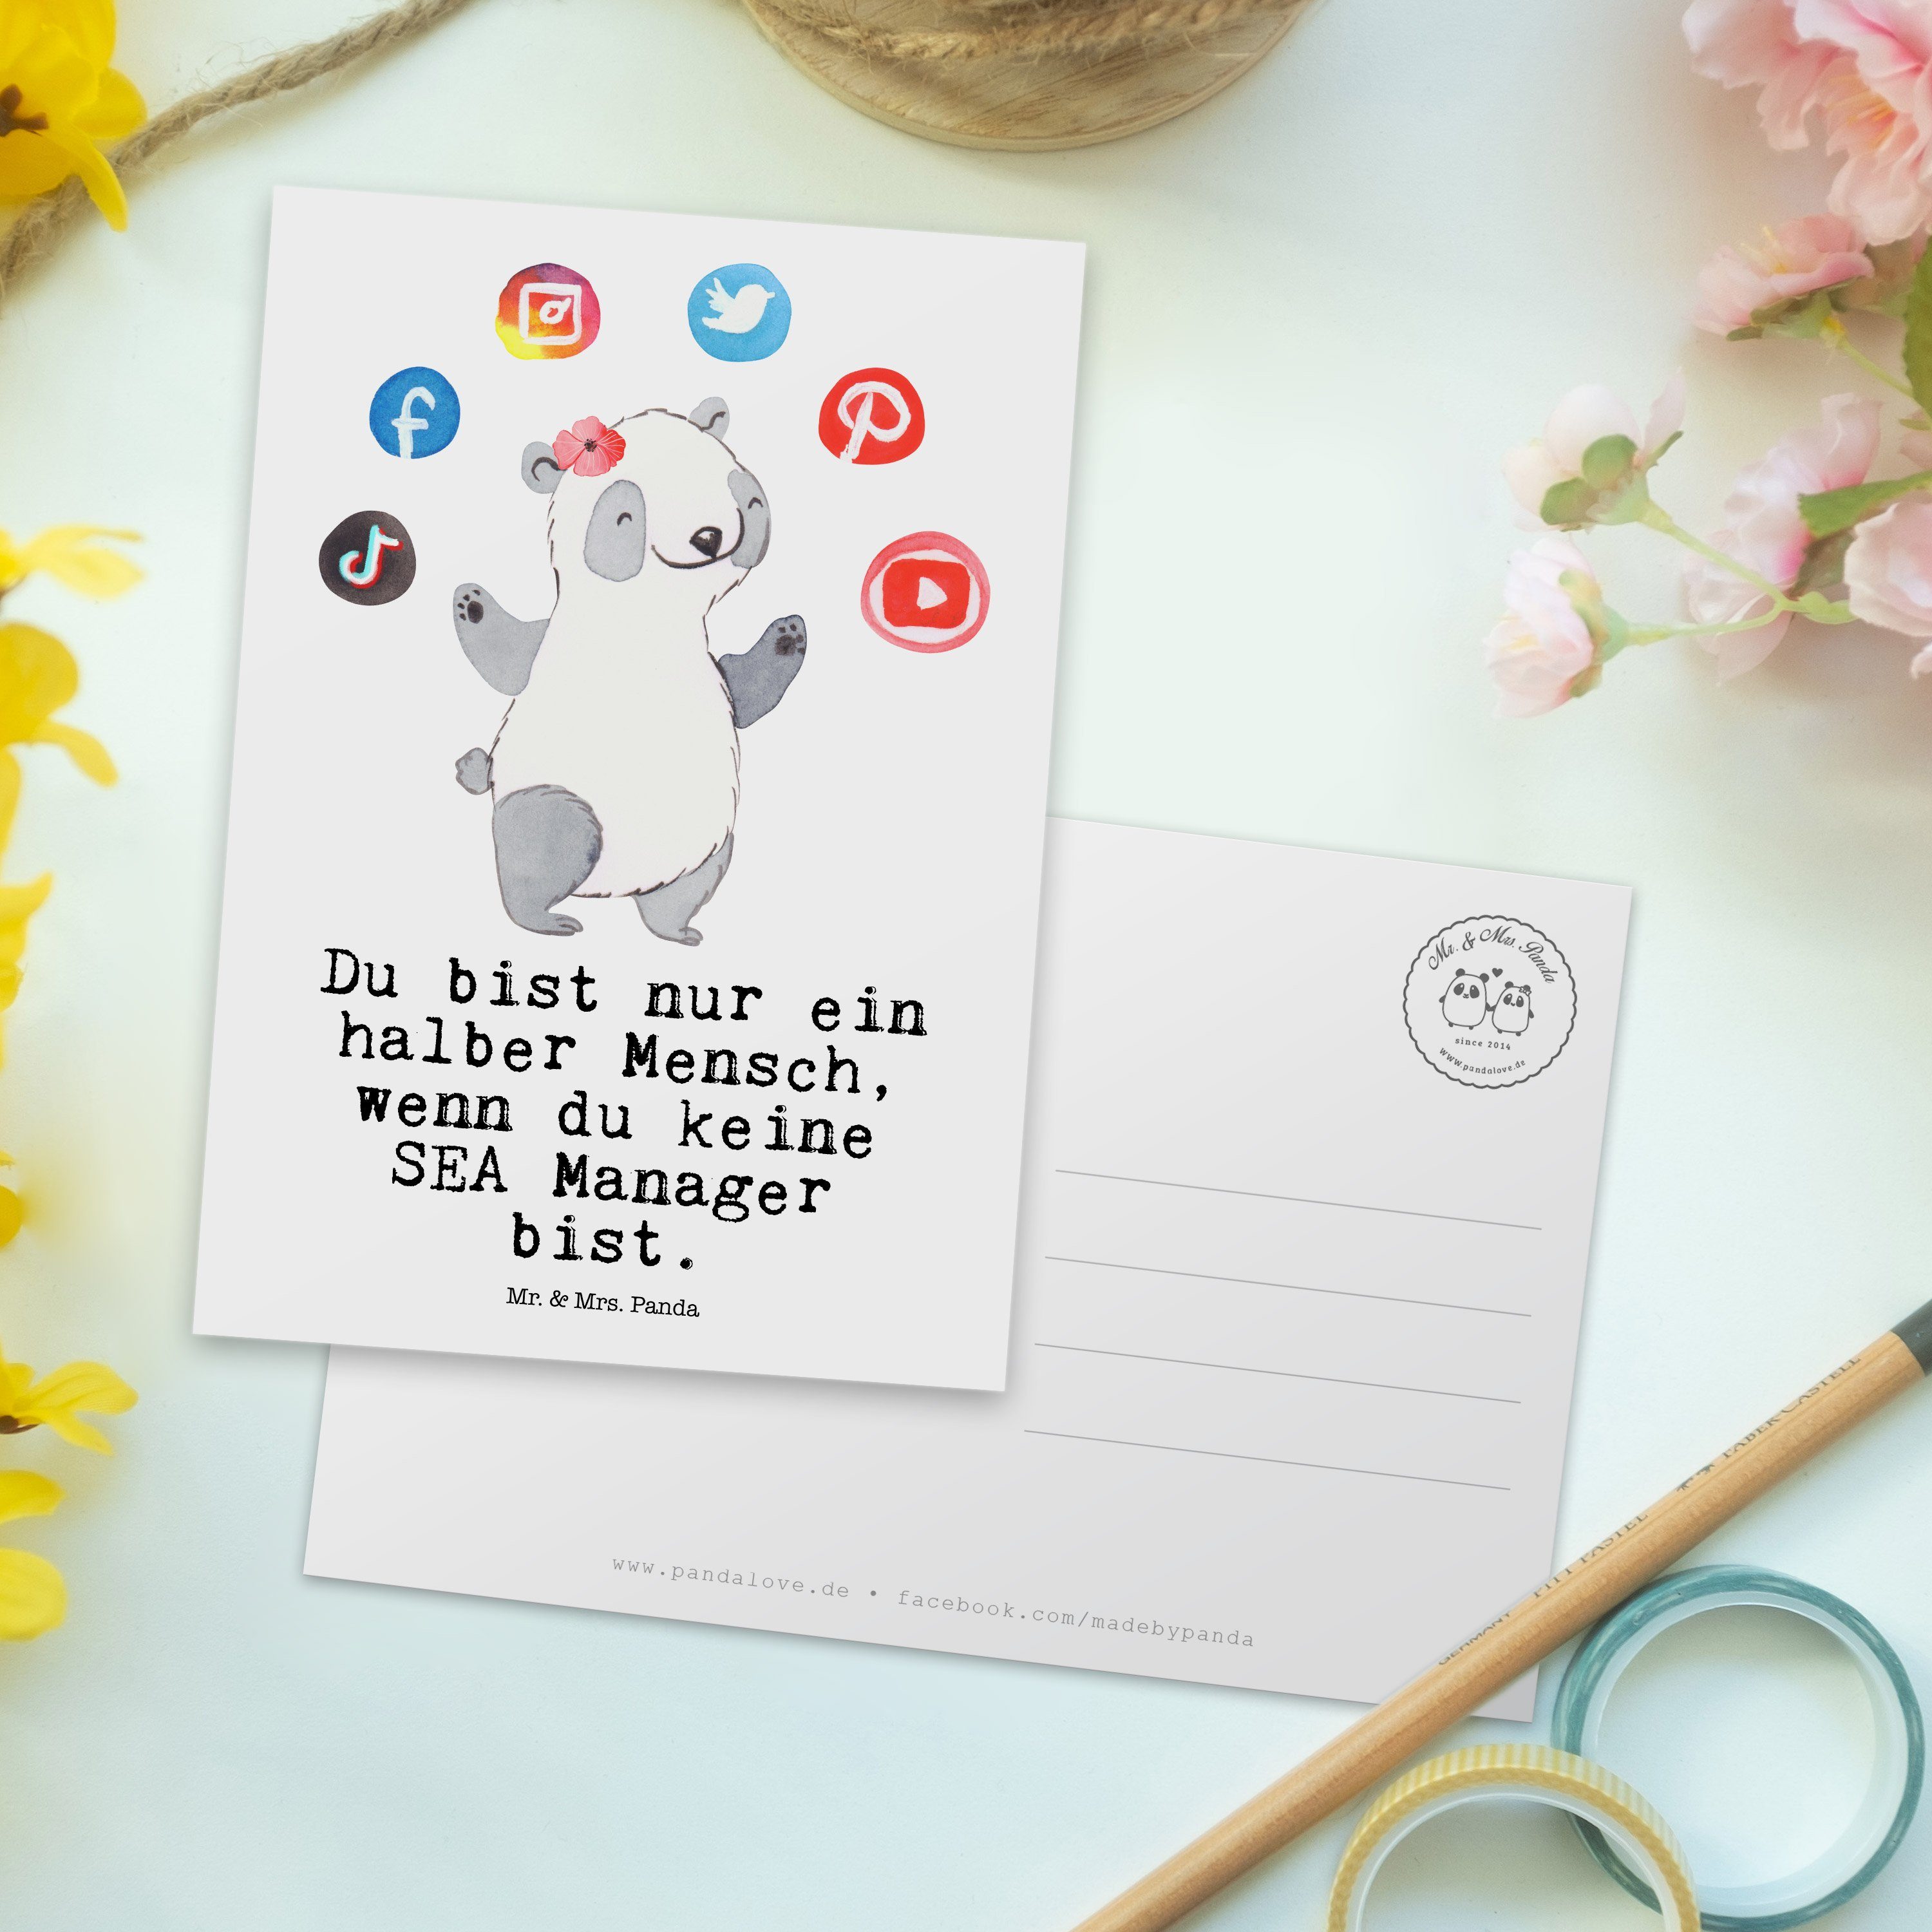 Gesch SEA Suchmaschinenmarketing, mit - Mr. Manager & Panda Mrs. Postkarte - Herz Geschenk, Weiß